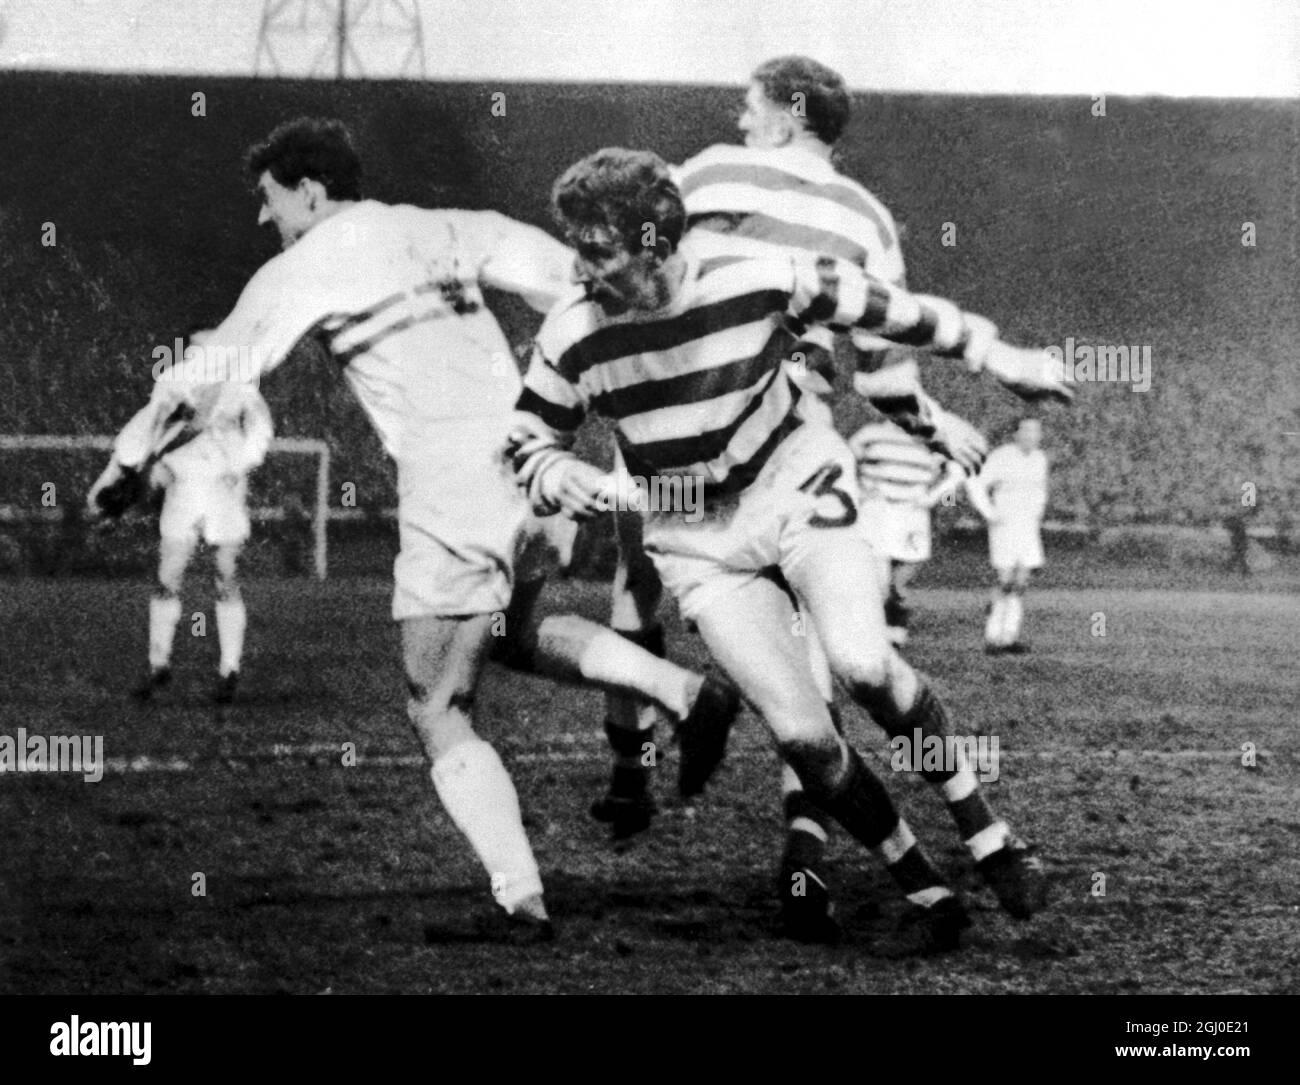 Celtic gegen MT Budapest Tommy Gemmell (Nr. 3) von Celtic führt den Ball von Torok von M.T. Budapest während des Halbfinalsspiel im ersten Etappensieg im European Cup Winnercup in Celtic Park ab. Celtic gewann mit drei Toren auf Null. April 1964. Stockfoto